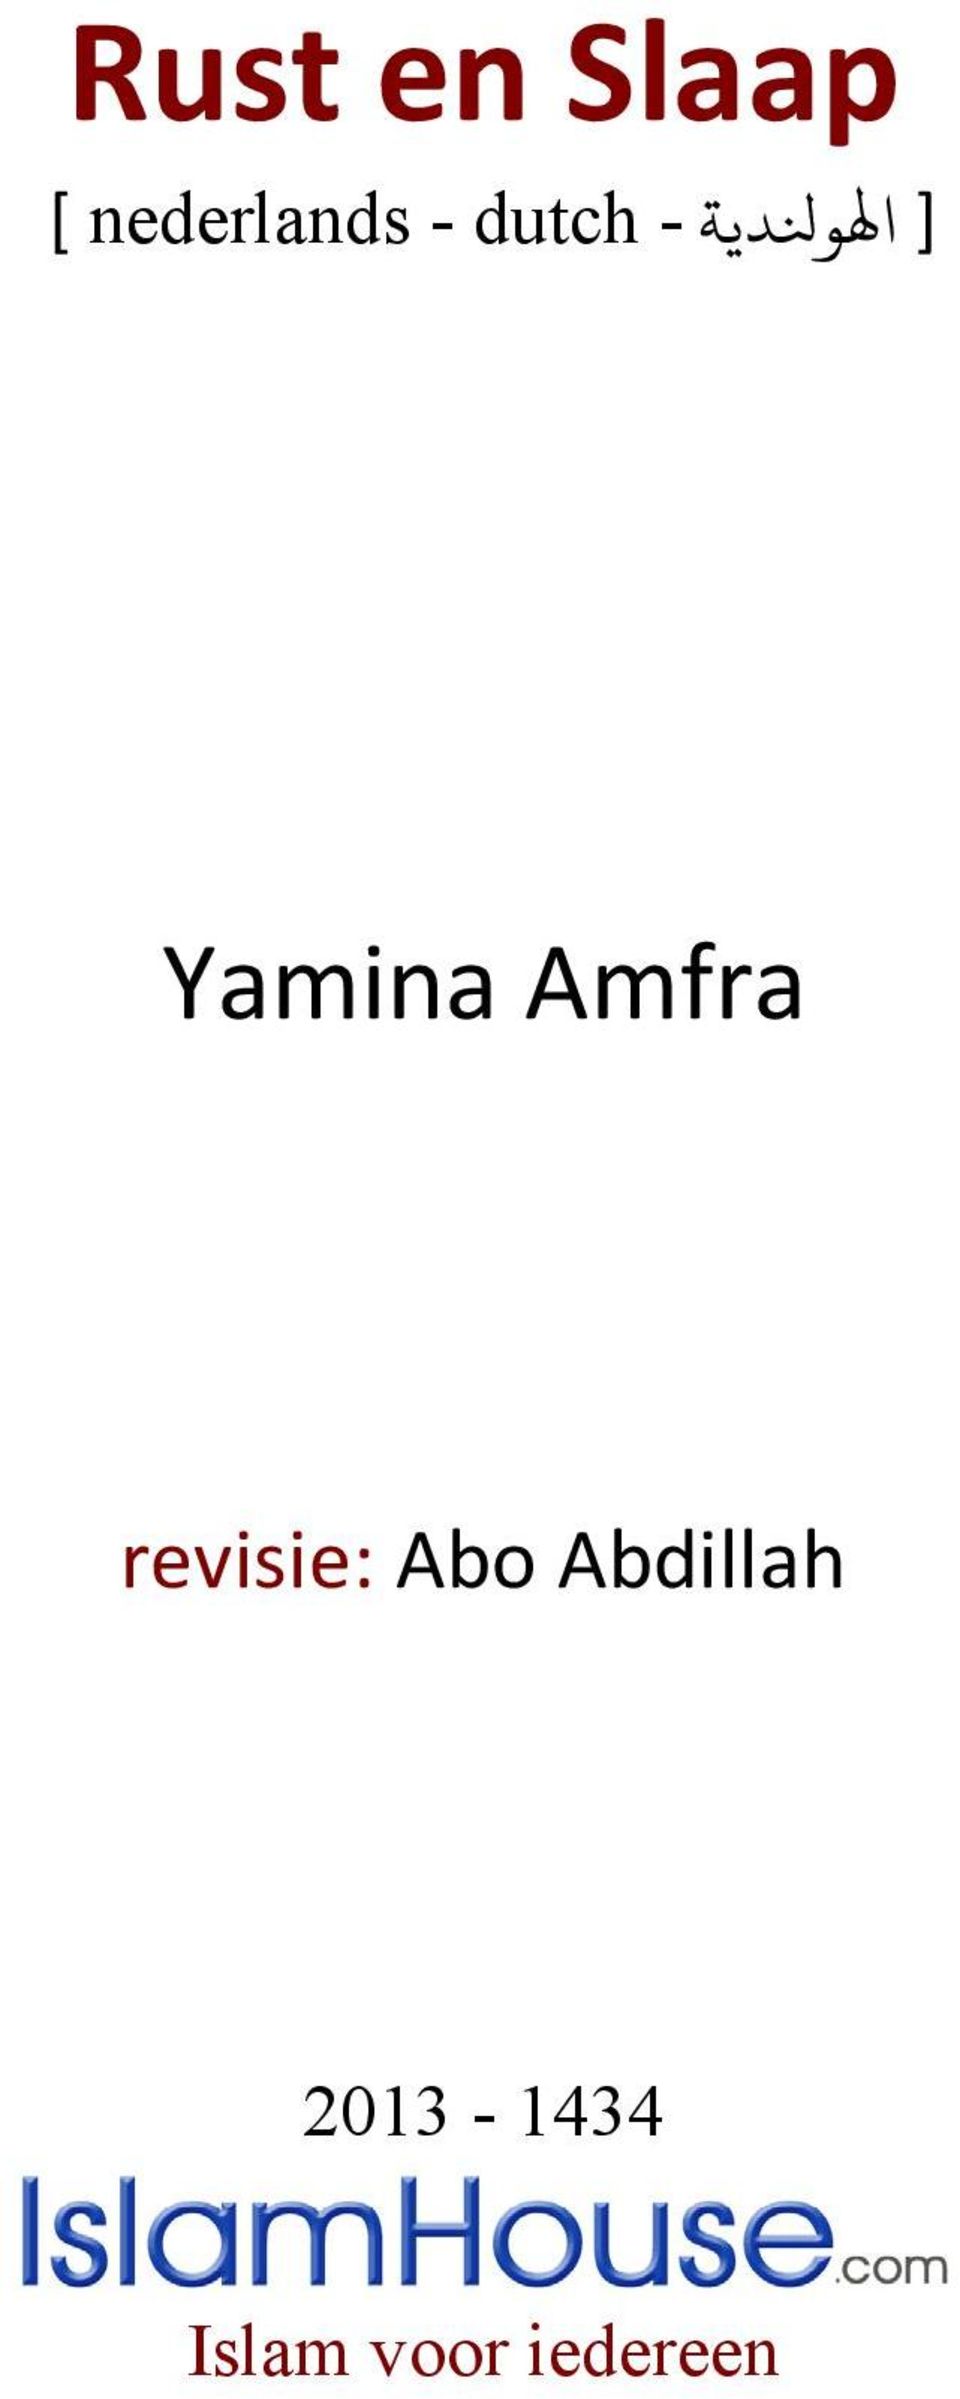 Amfra revisie: Abo Abdillah